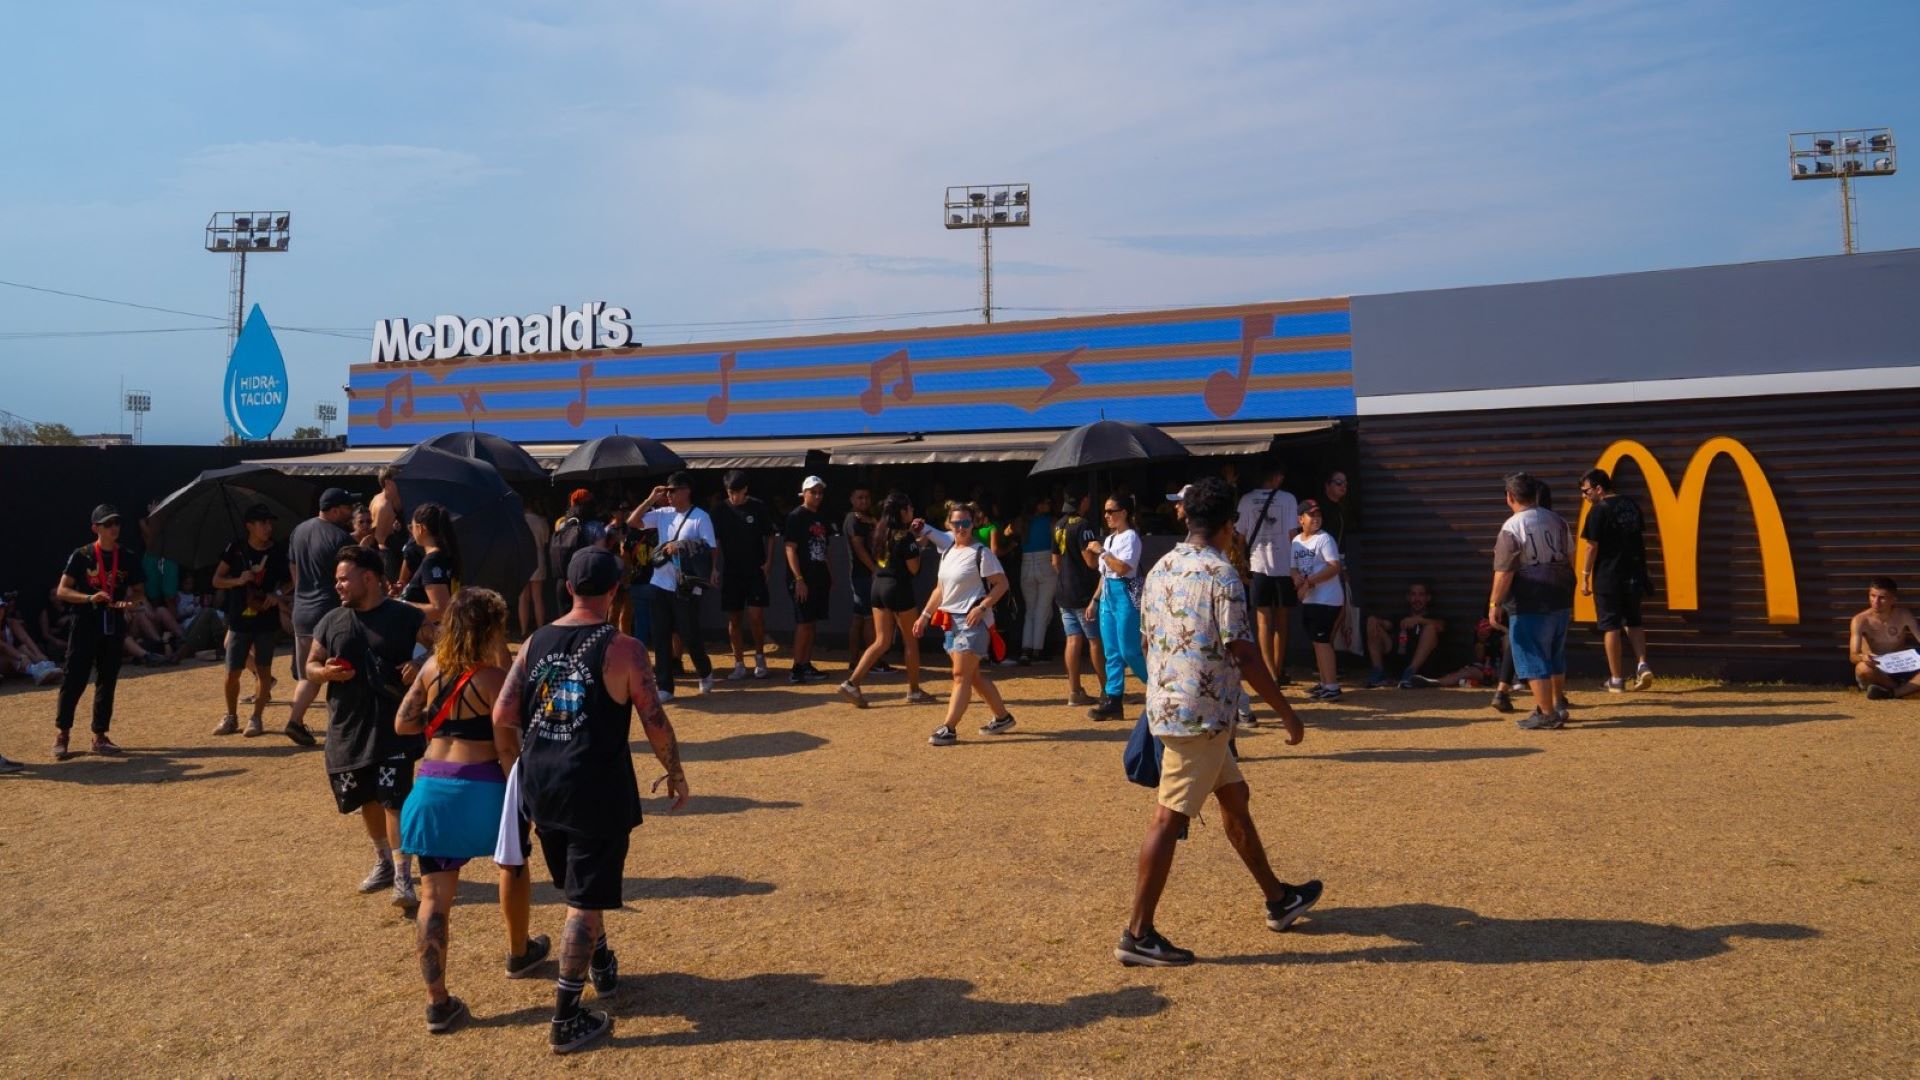 [Argentina] McDonald’s presente por segundo año consecutivo en el Lollapalooza con un imponente local y una propuesta sustentable